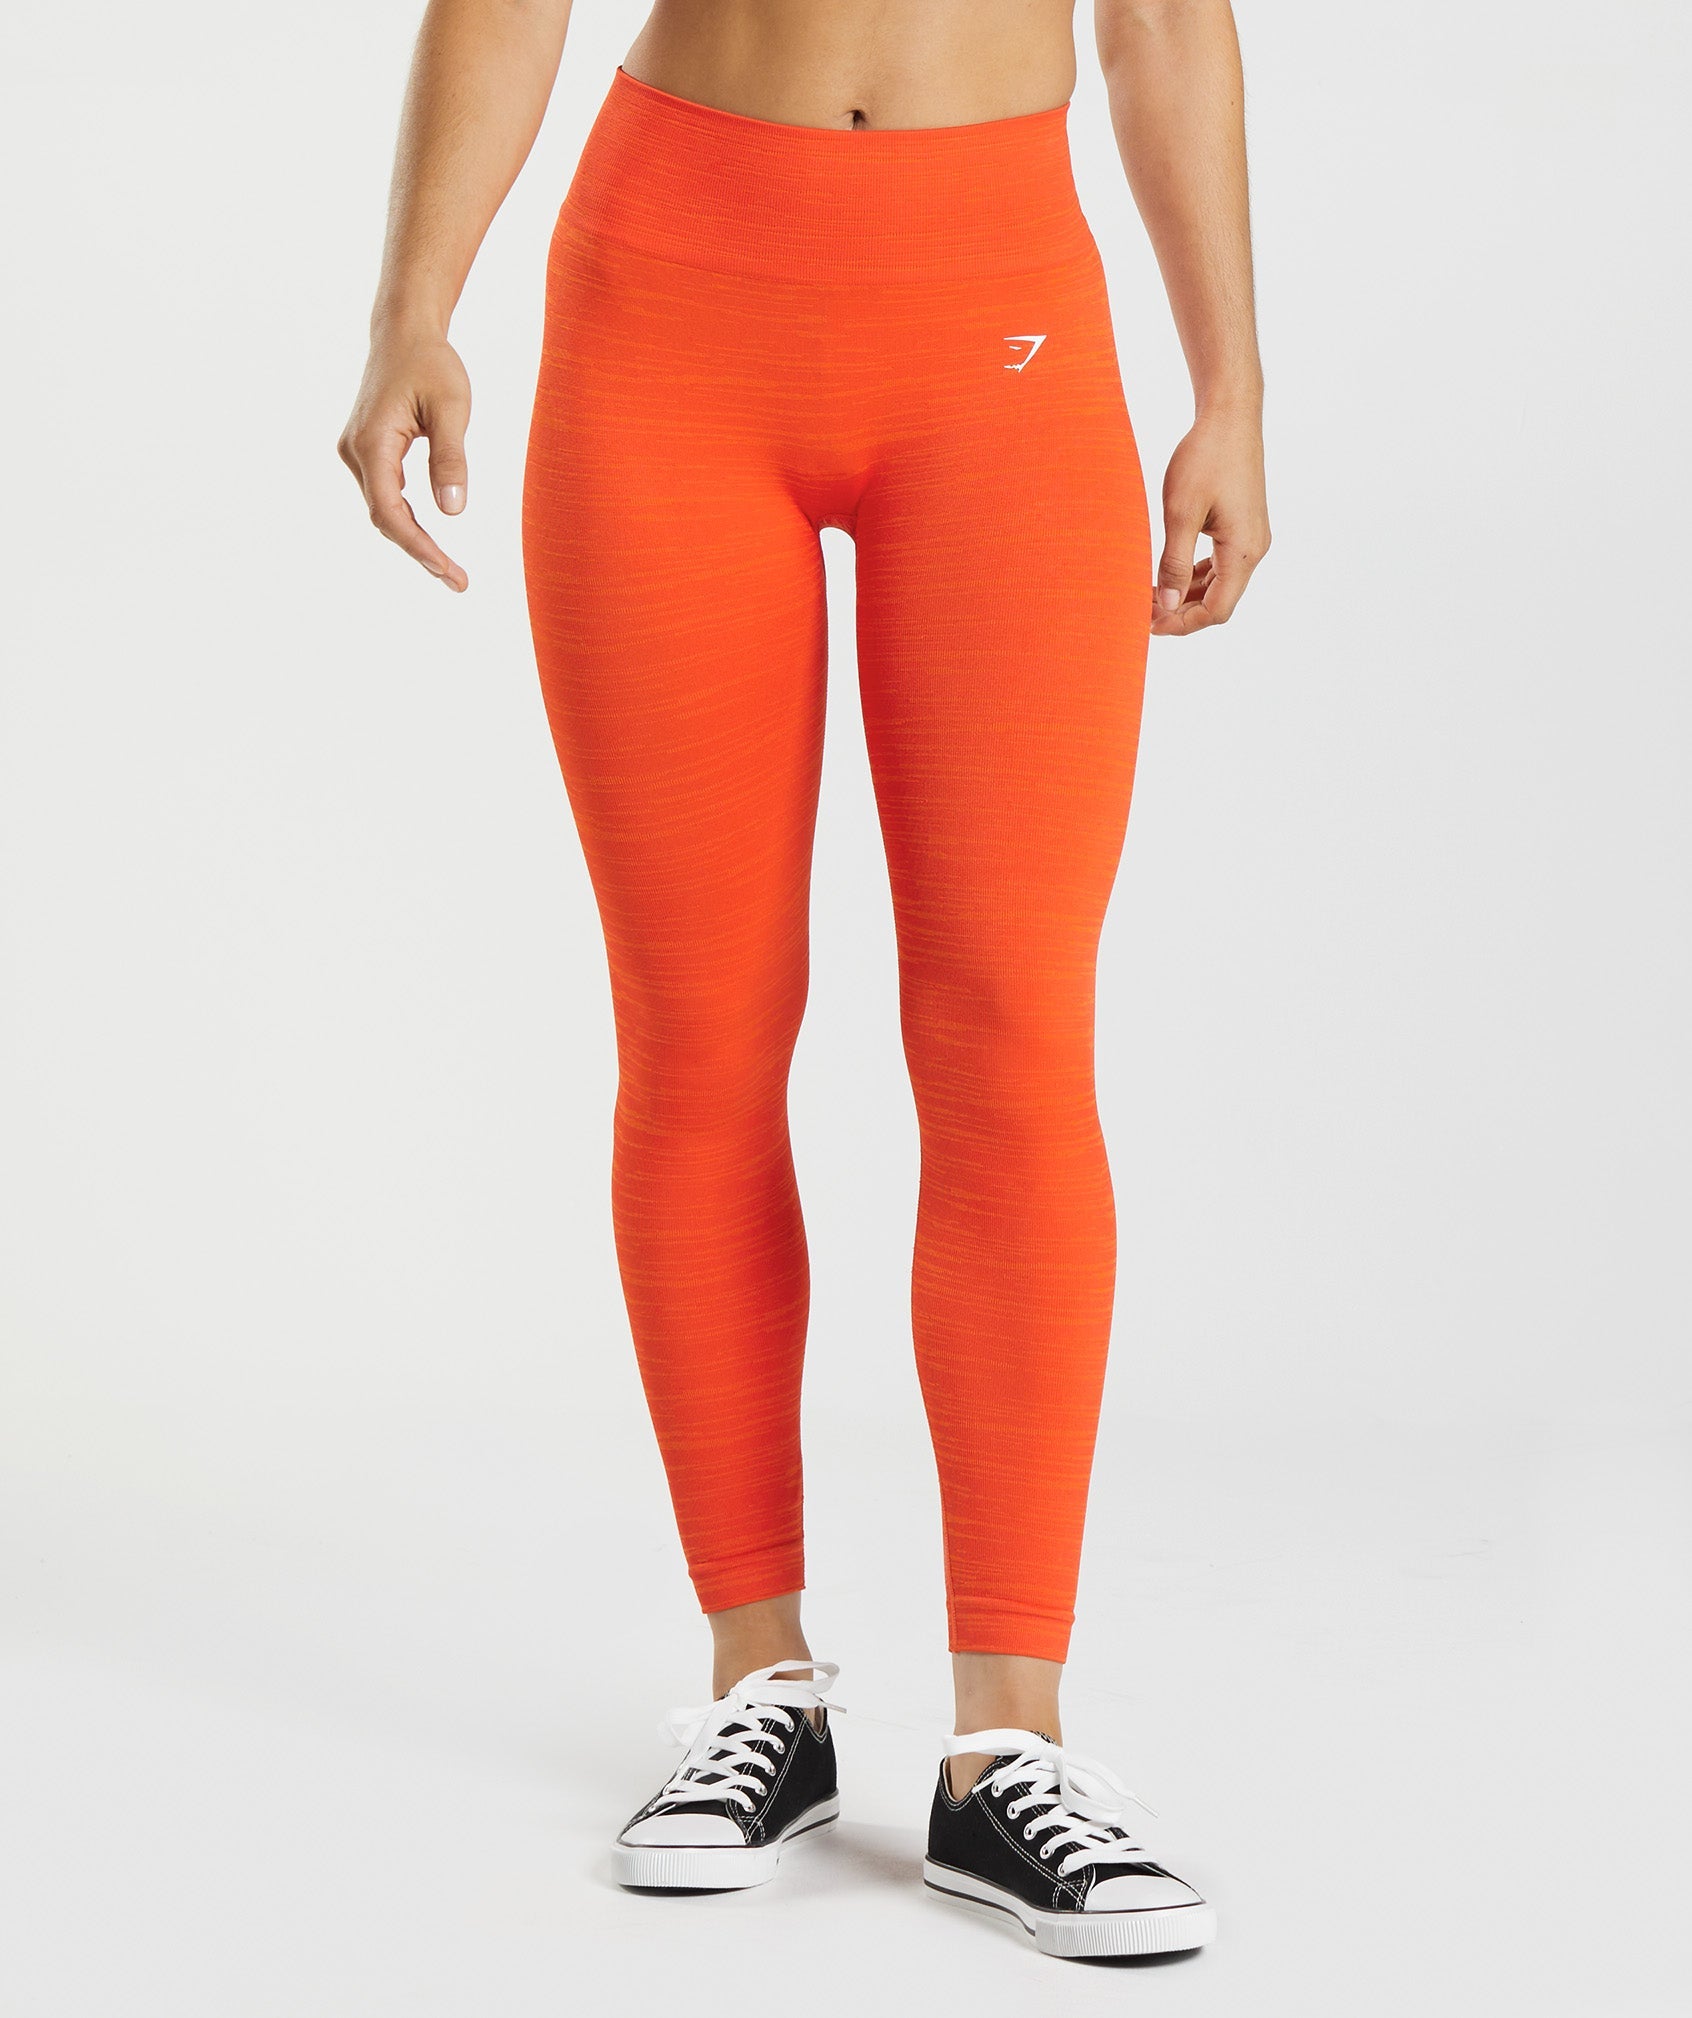 Ryderwear Orange Marl Seamless Staples Leggings – IT LOOKS FIT